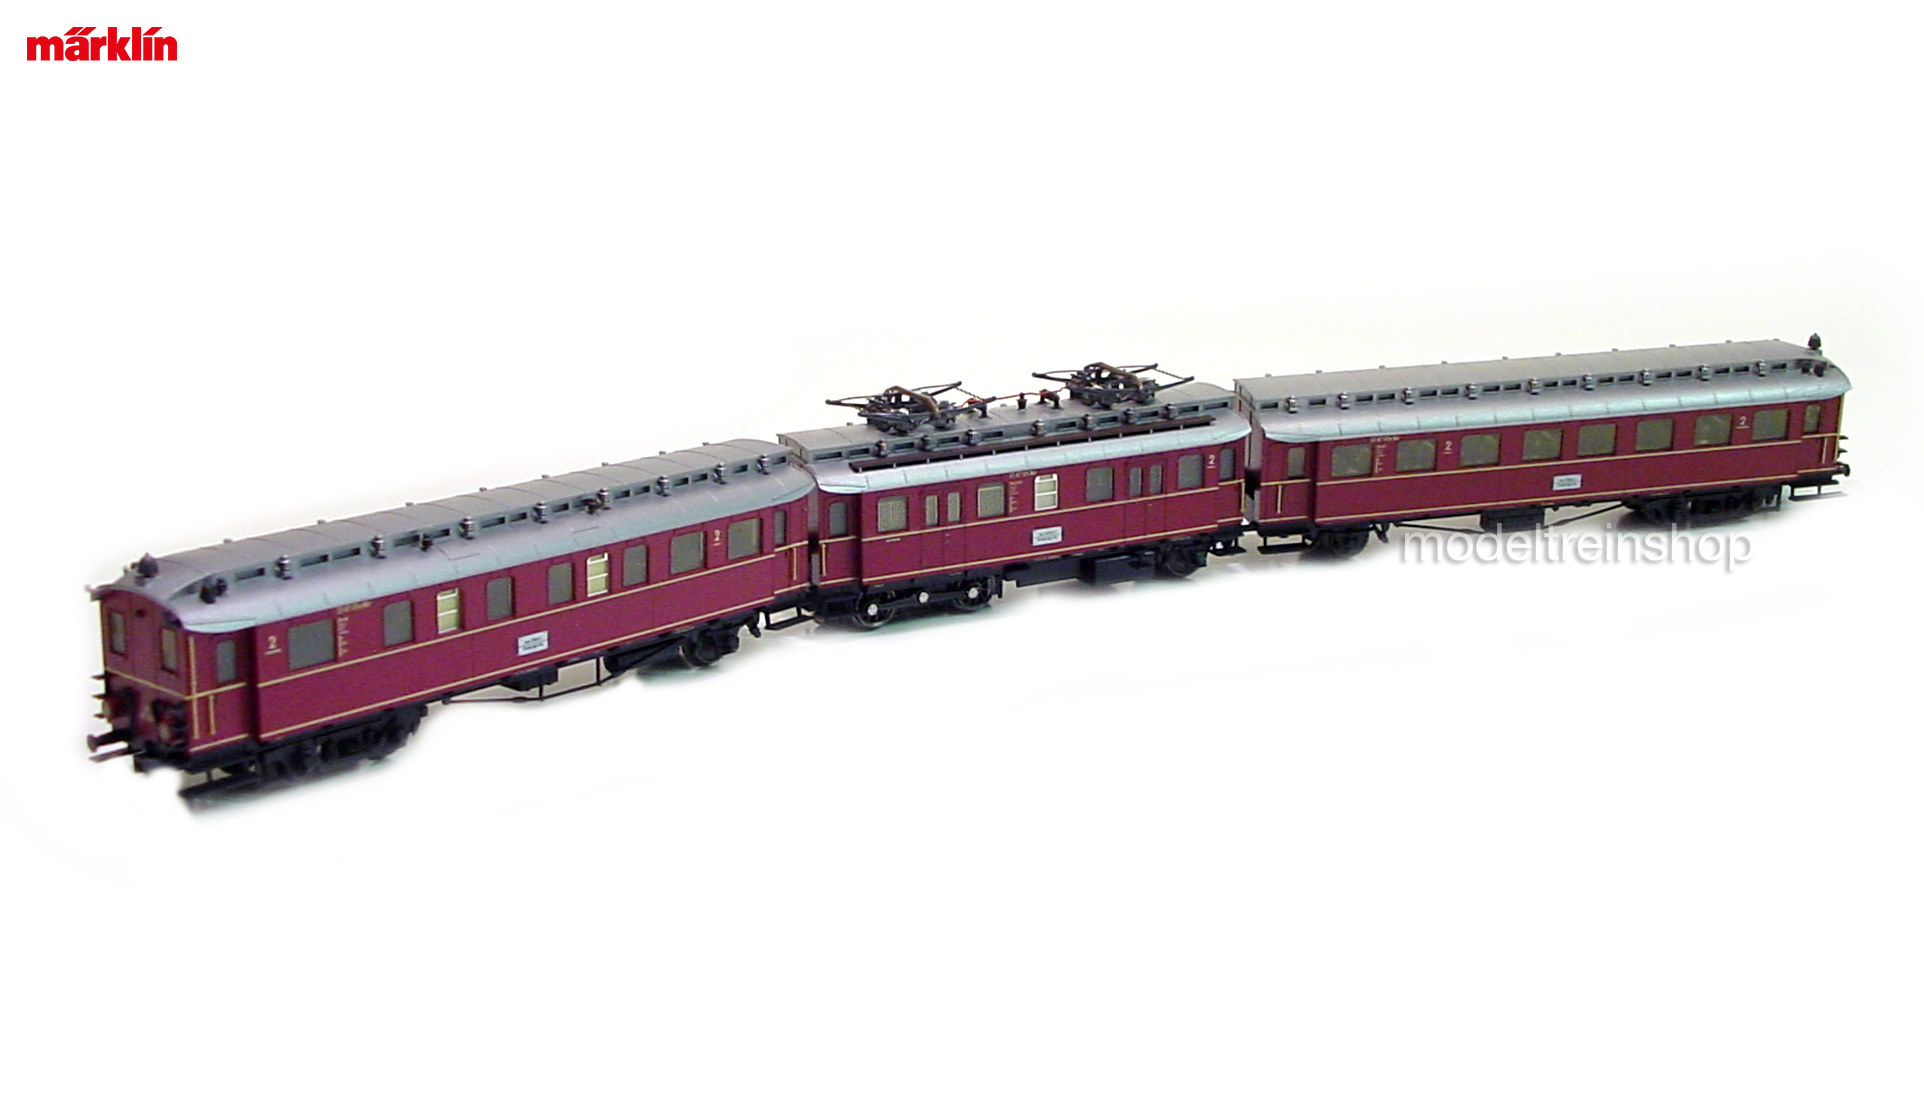 Marklin H0 37265 Elektrisch treinstel BR ET 87 - Modeltreinshop